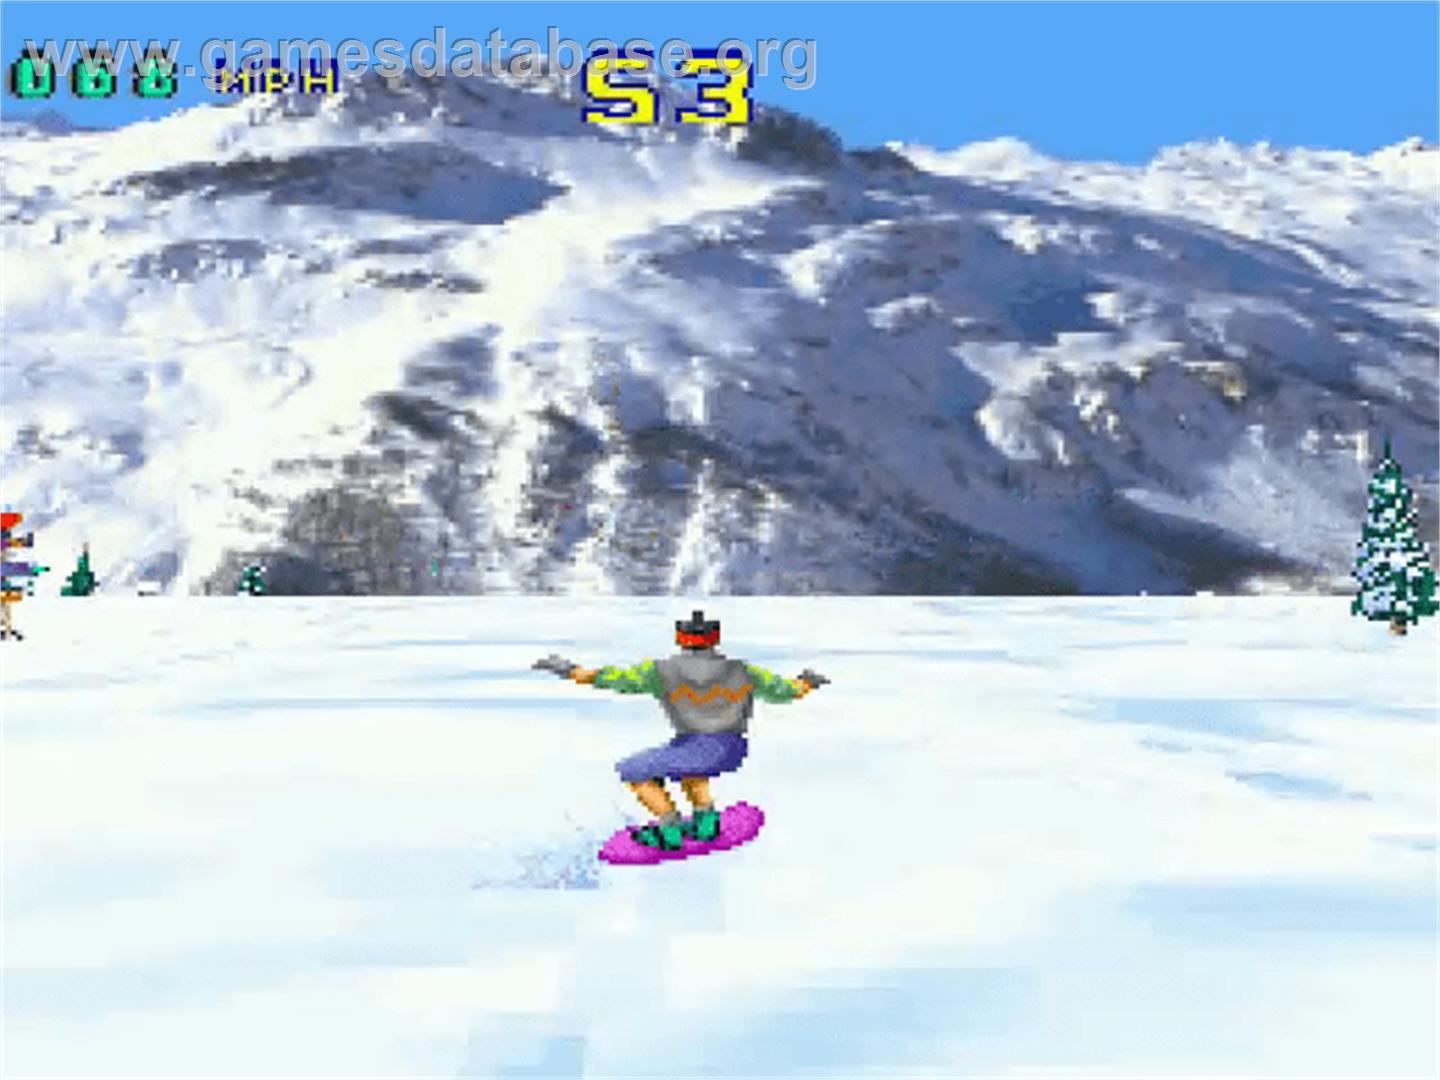 Val d'Isère Skiing and Snowboarding - Atari Jaguar - Artwork - In Game